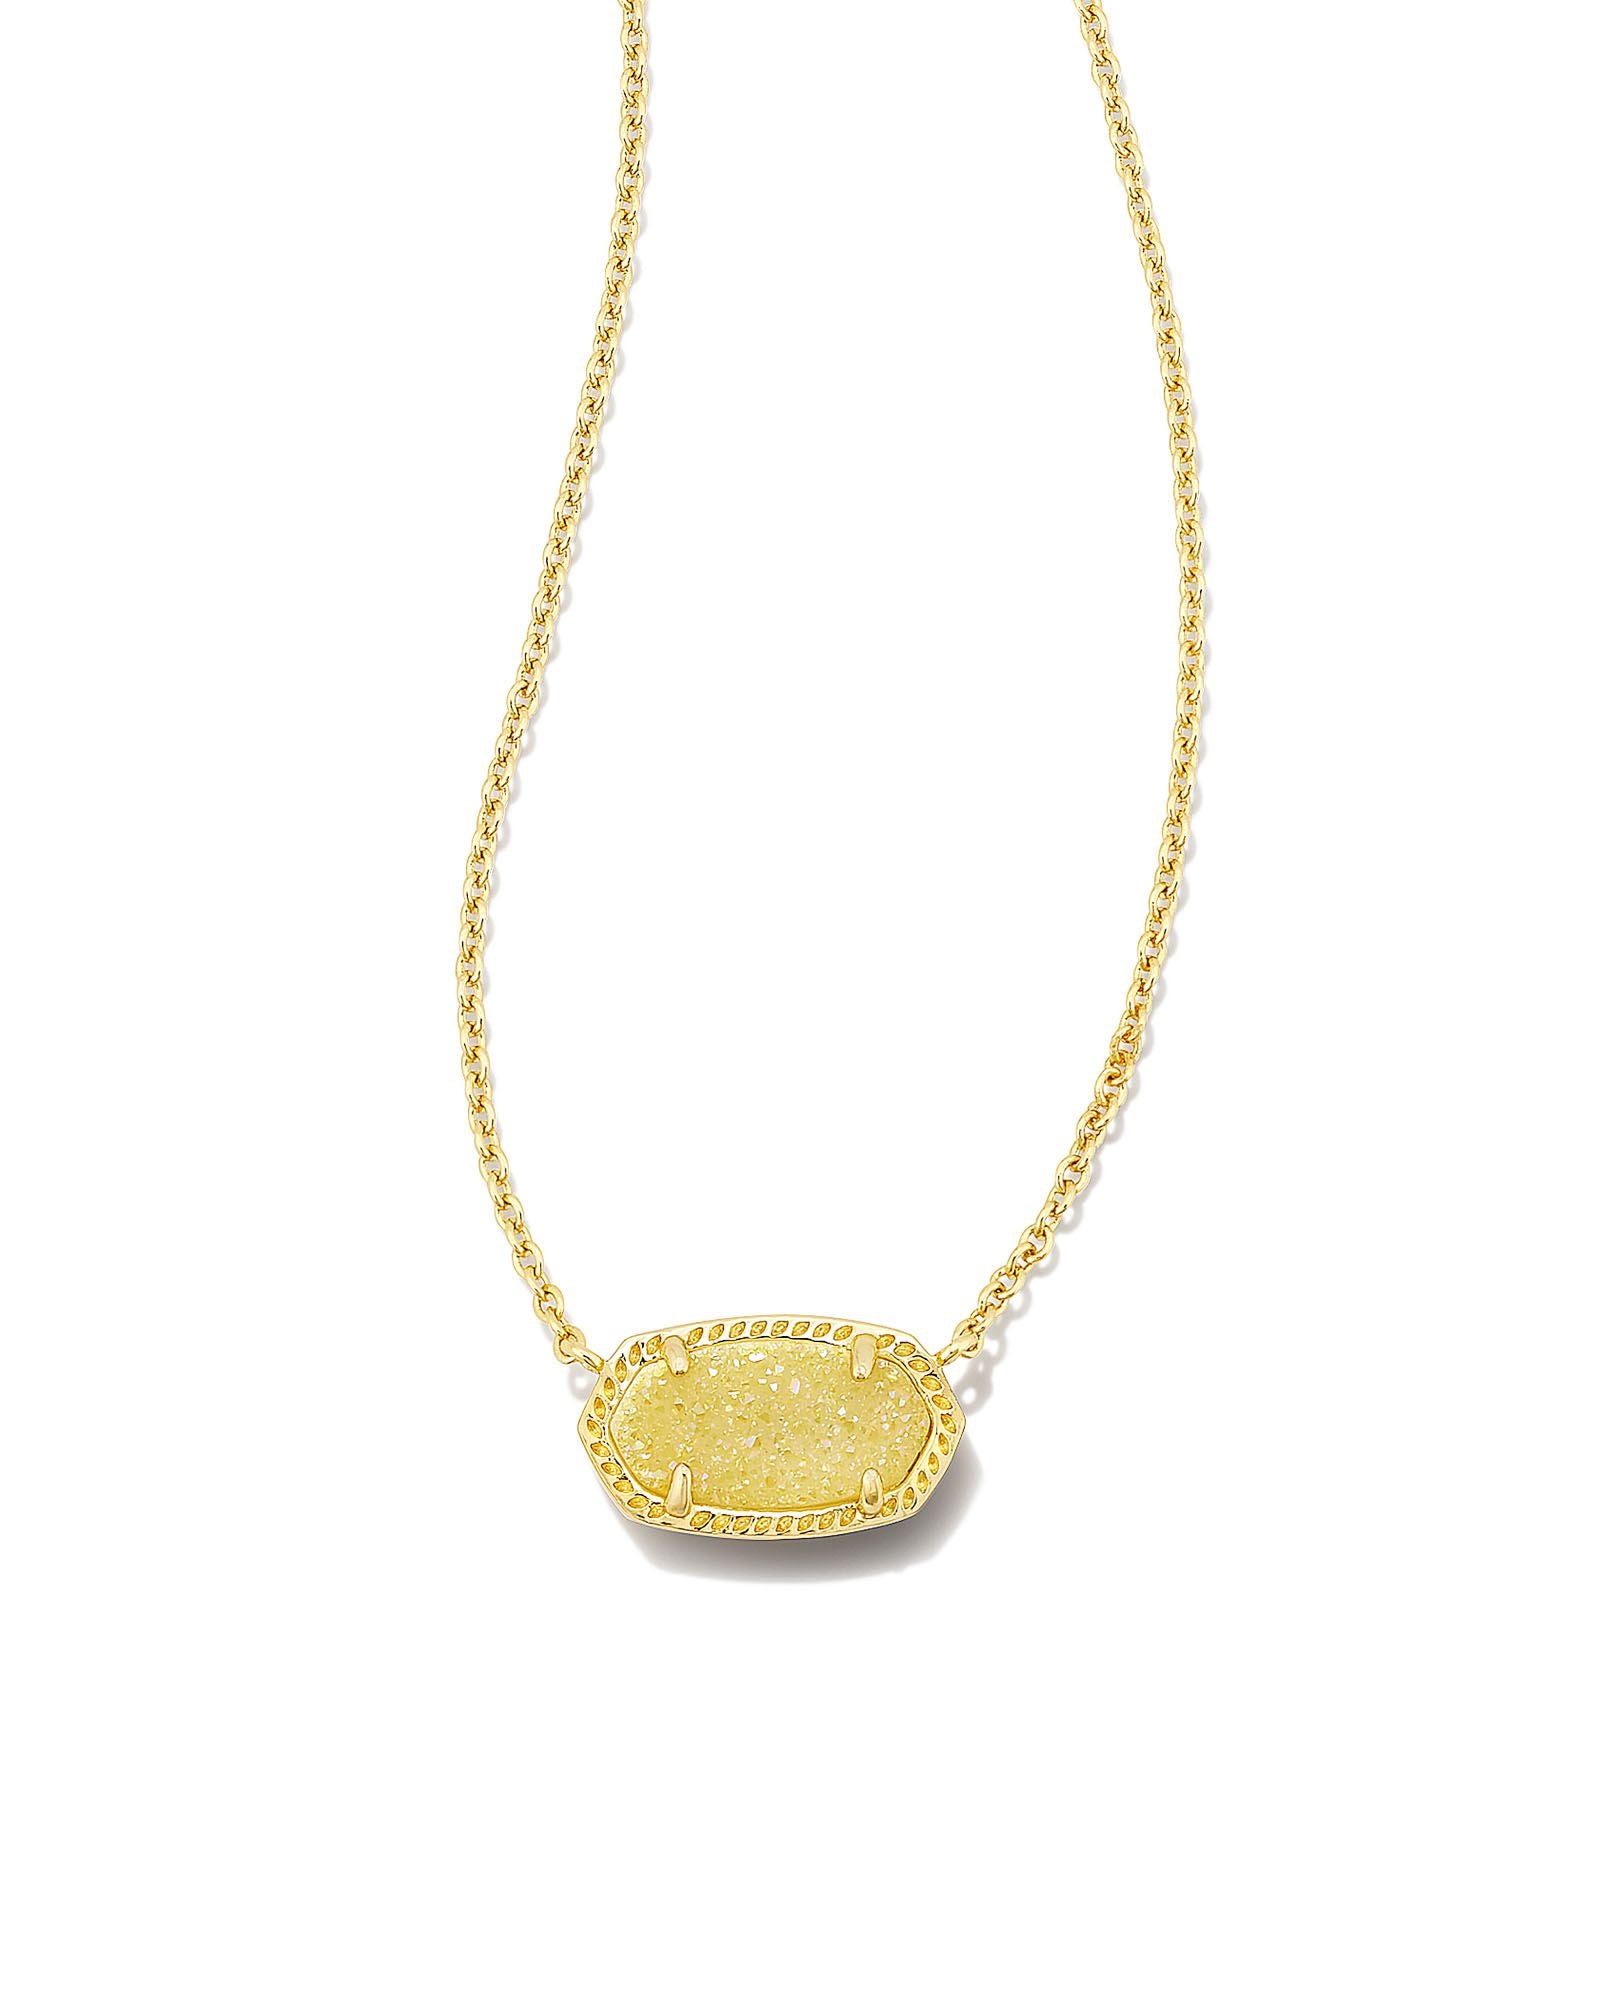 Kendra Scott necklace | Kendra scott necklace, Necklace, Kendra scott